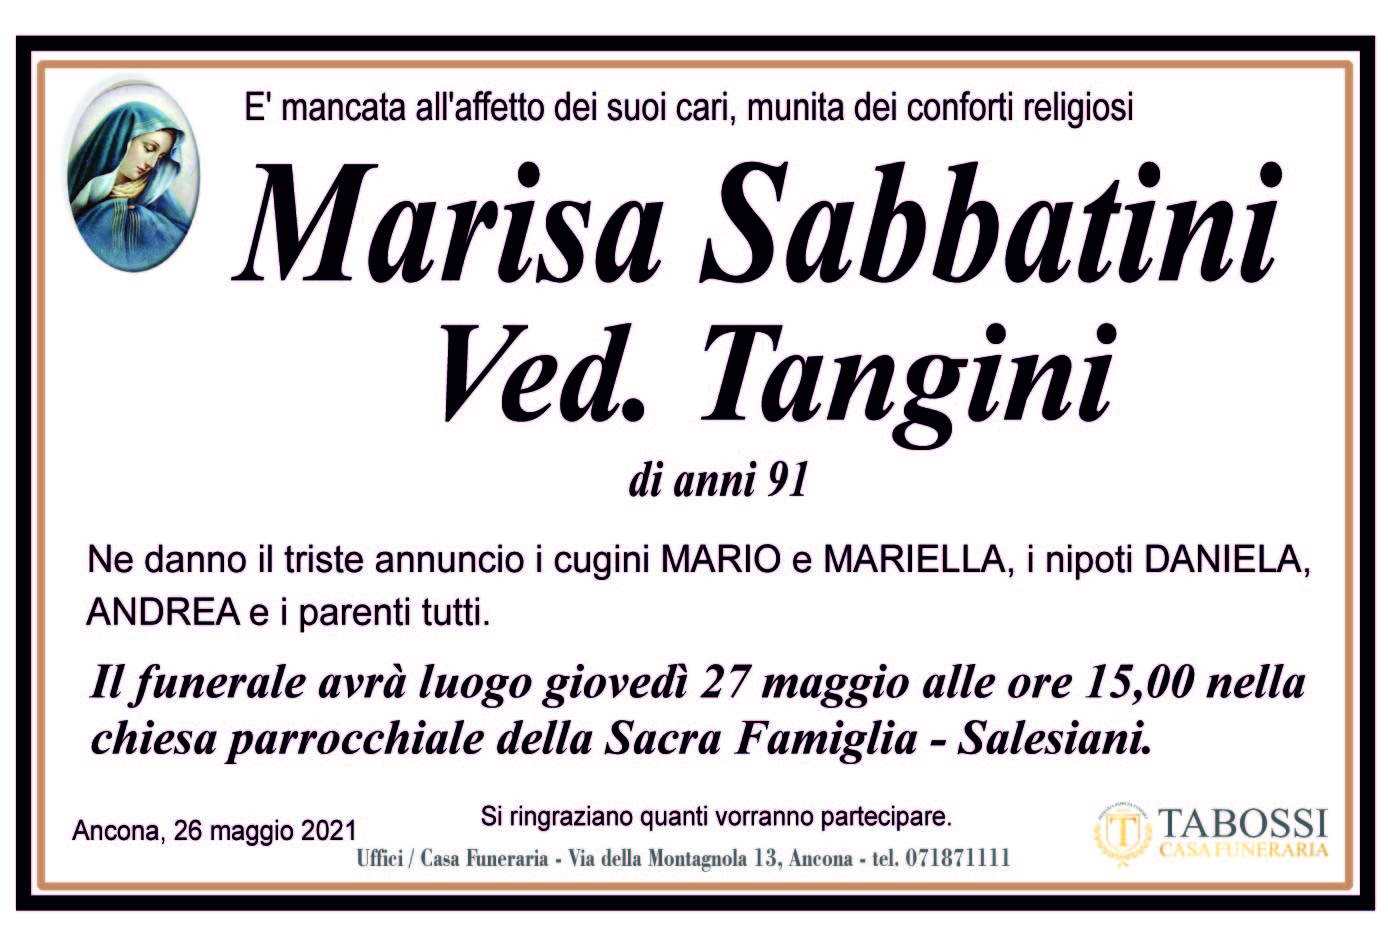 Marisa Sabbatini